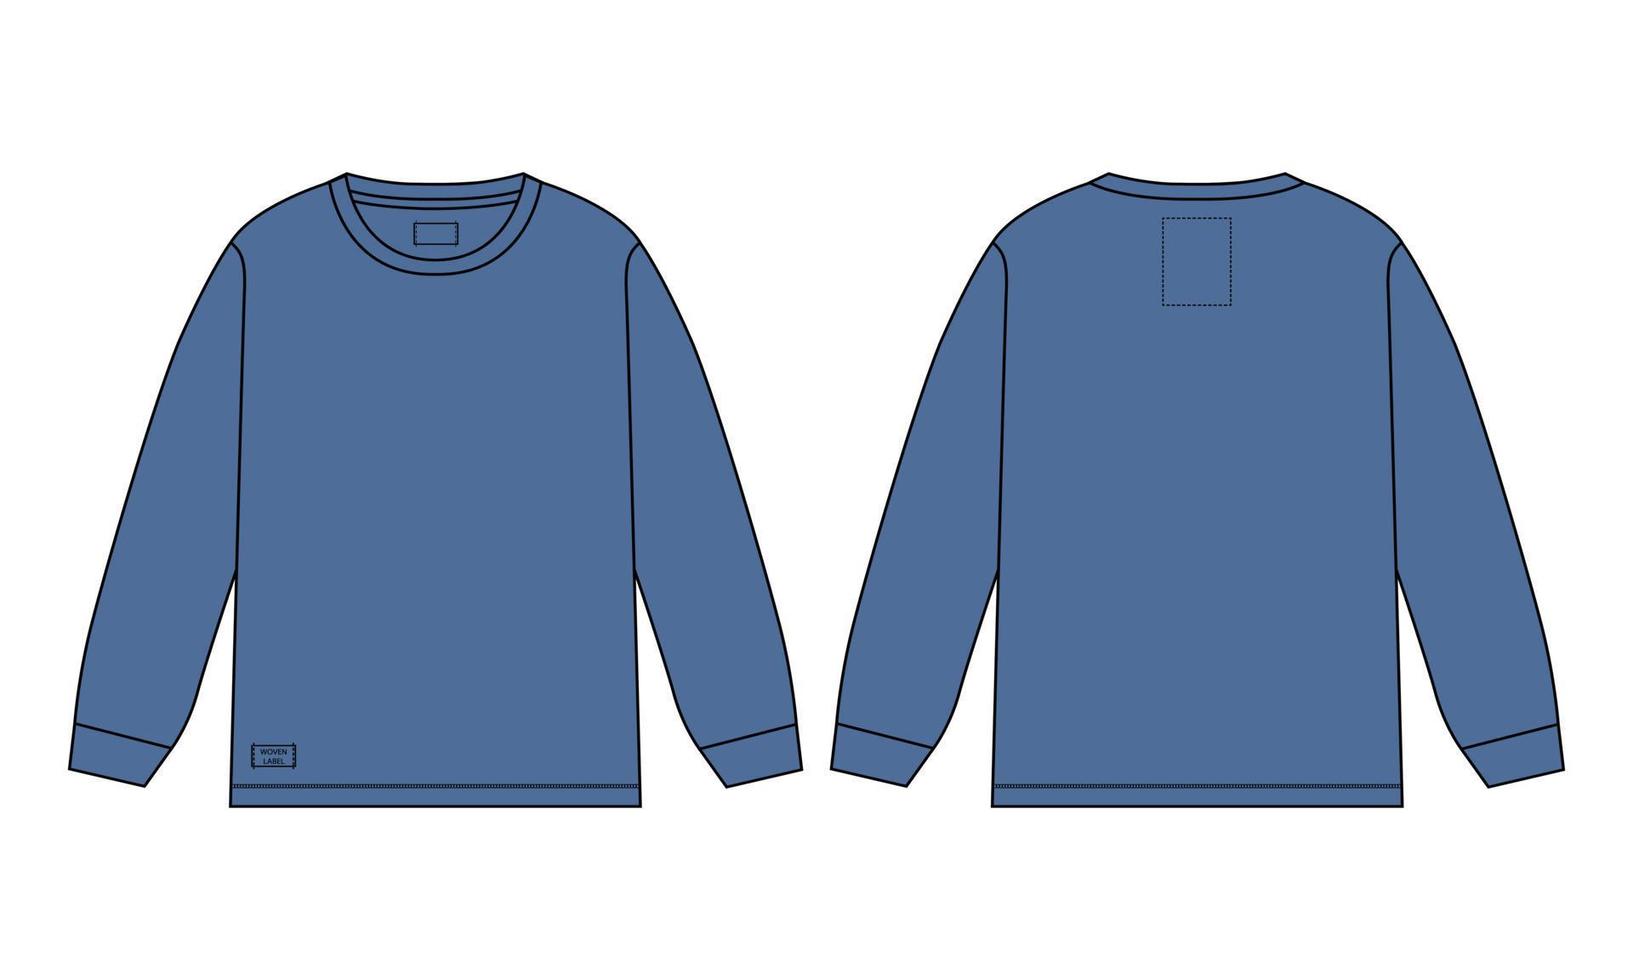 Langarm-T-Shirt technische Mode flache Skizze Vektor-Illustration marineblaue Farbvorlage Vorlage Vorder- und Rückansicht isoliert auf weißem Hintergrund. vektor